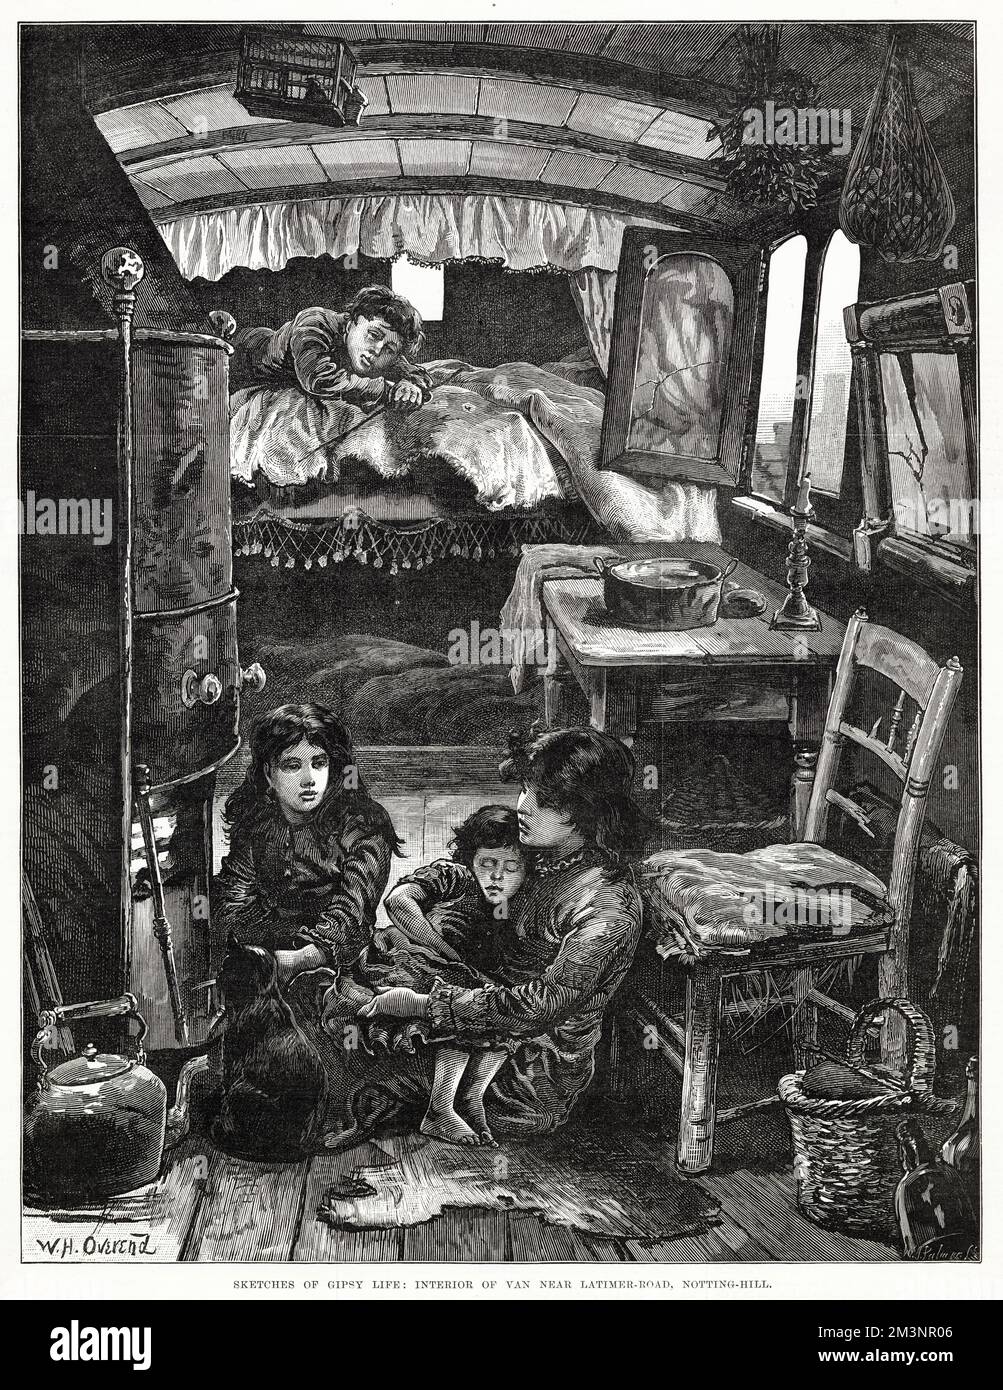 Condizioni di vita all'interno di una carovana zingara, vicino a Latimer Road. Data: 1879 Foto Stock